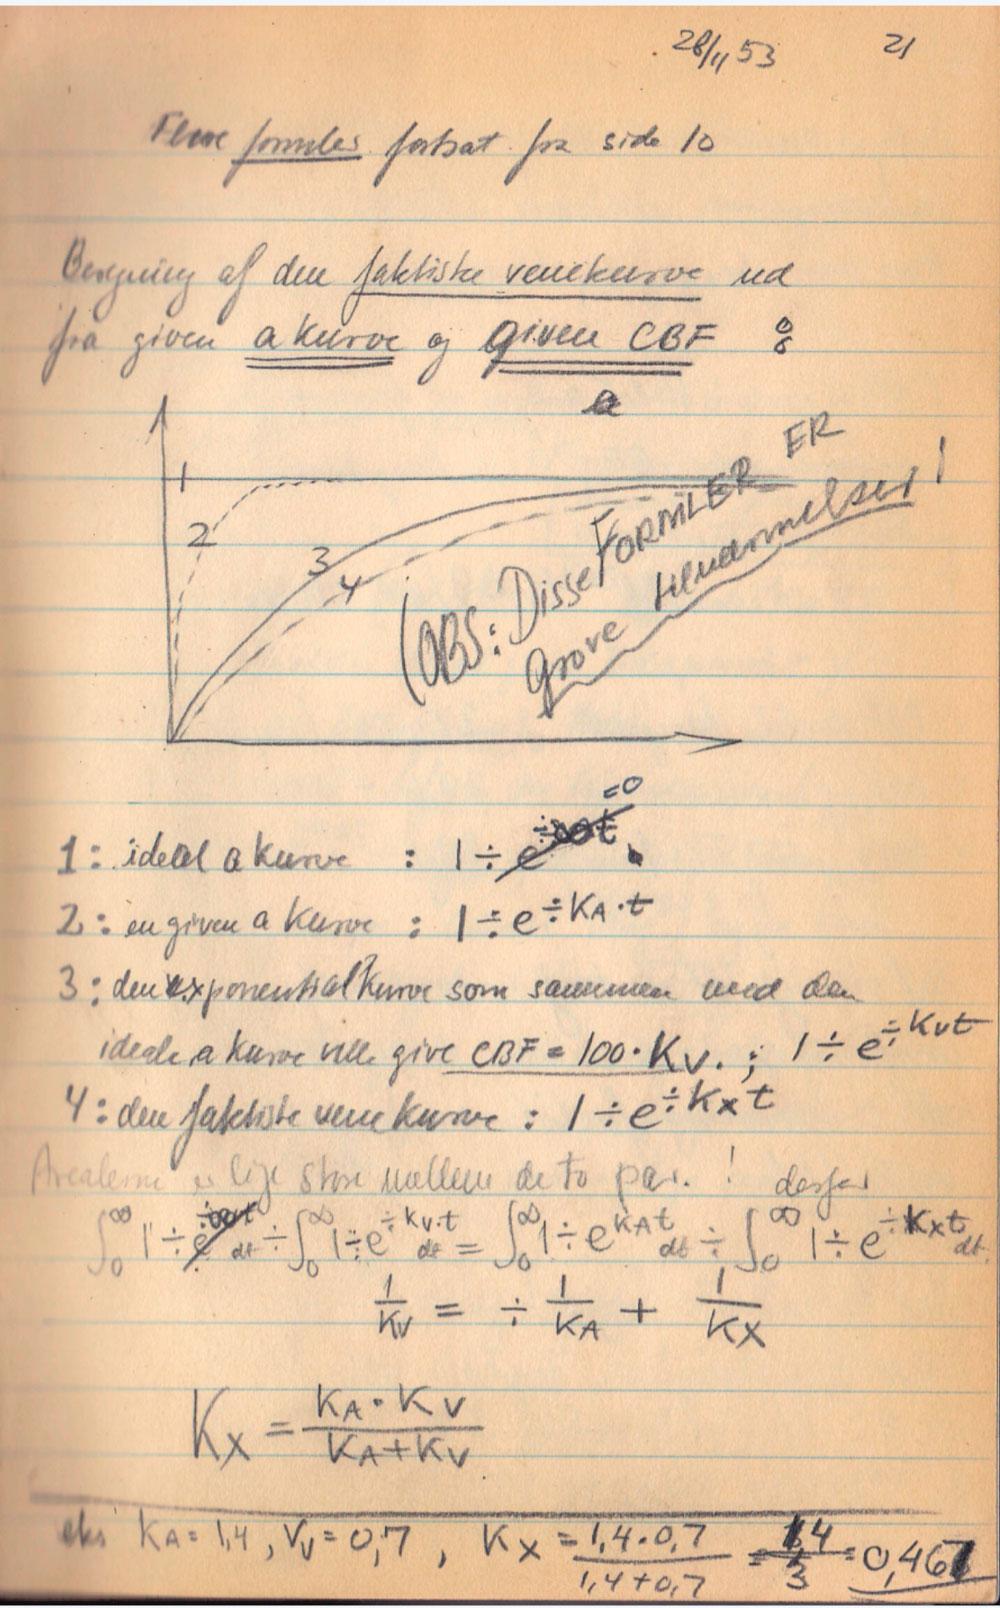 Eksempler på sider i Niels A. Lassens notesbog, nedfældet i perioden november 1953 til maj 1954. I notesbogen reflekterede Lassen over faglige problemstillinger knyttet til matematik, kinetik og mulige laboratorieforsøg.